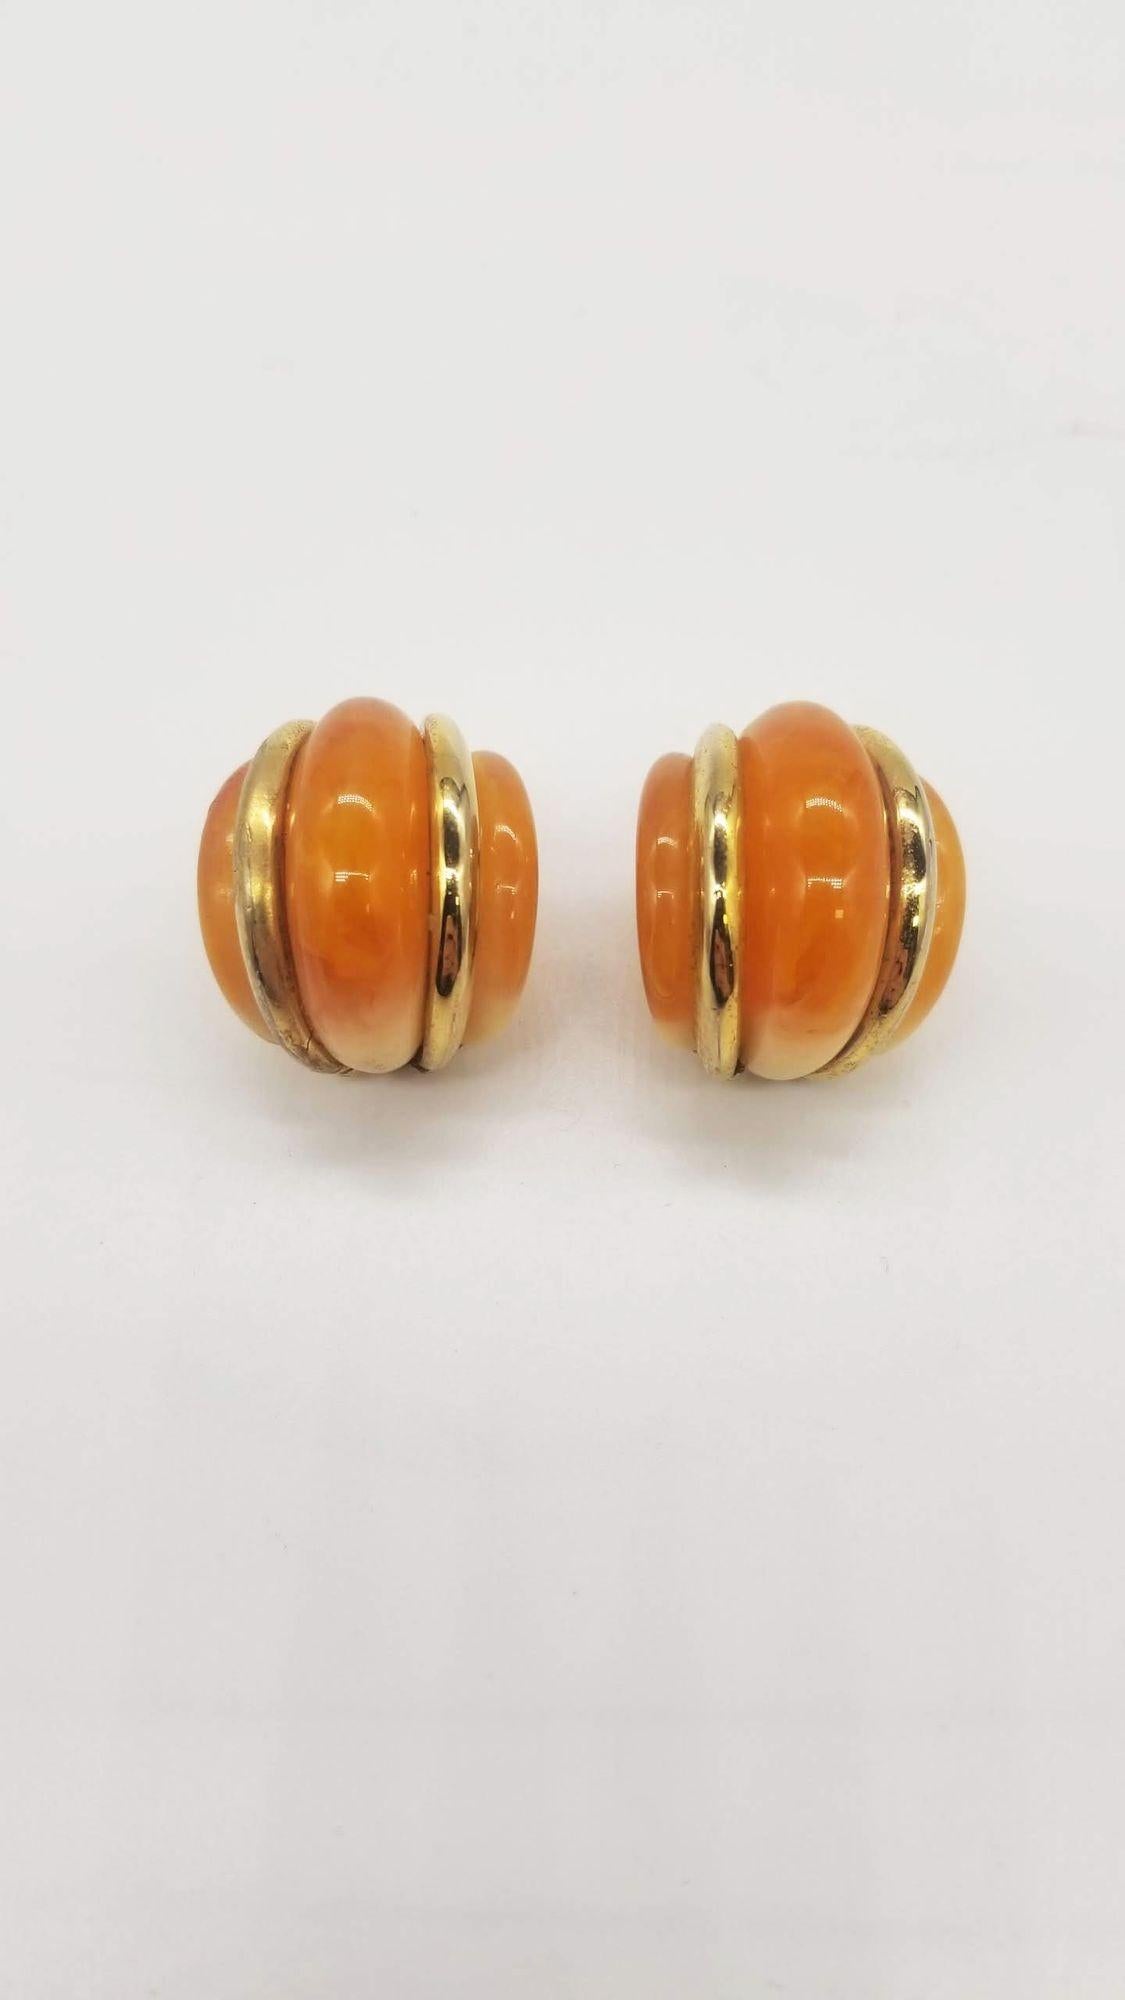 Werten Sie Ihre Schmucksammlung mit den Kenneth Jay Lane's Double Ribbed Domed Clip-On Earrings auf, die eine perfekte Verbindung von Opulenz und zeitgenössischem Design darstellen. Die aus luxuriösem goldfarbenem Metall gefertigten und mit